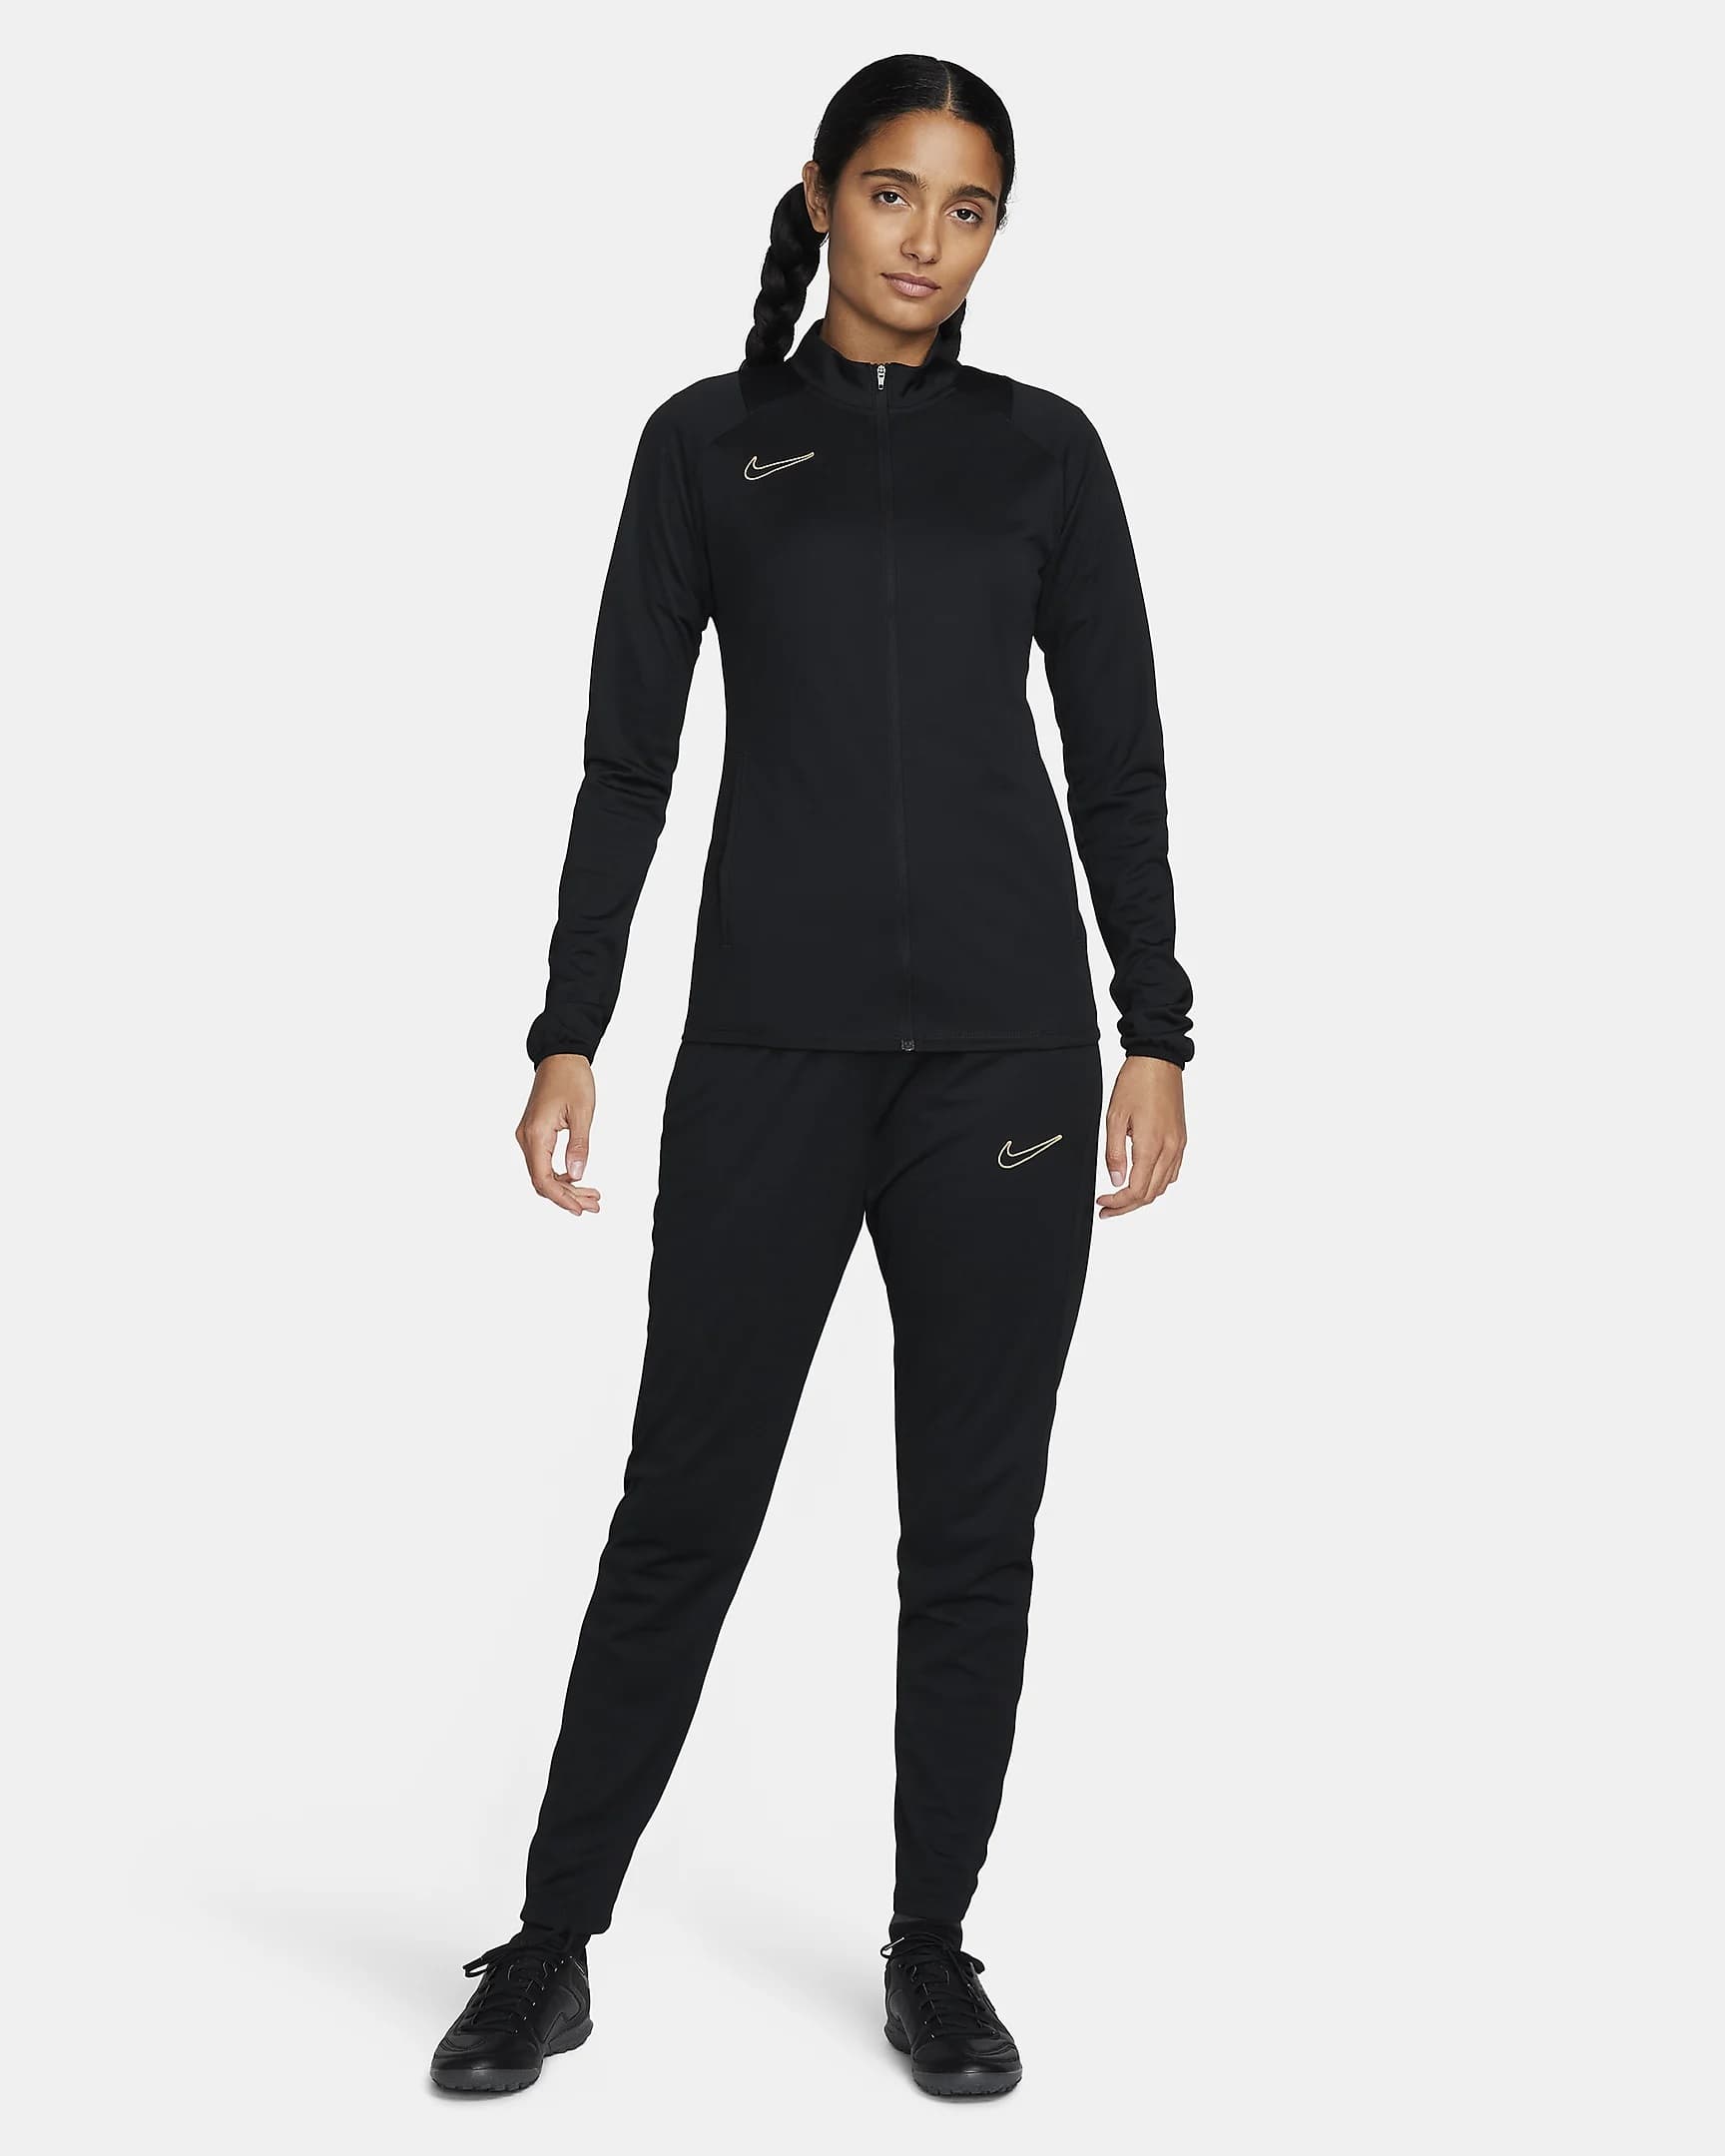 Nike Dri-FIT Academy Survêtement Noir/Or métallique - Survêtement Femme Nike